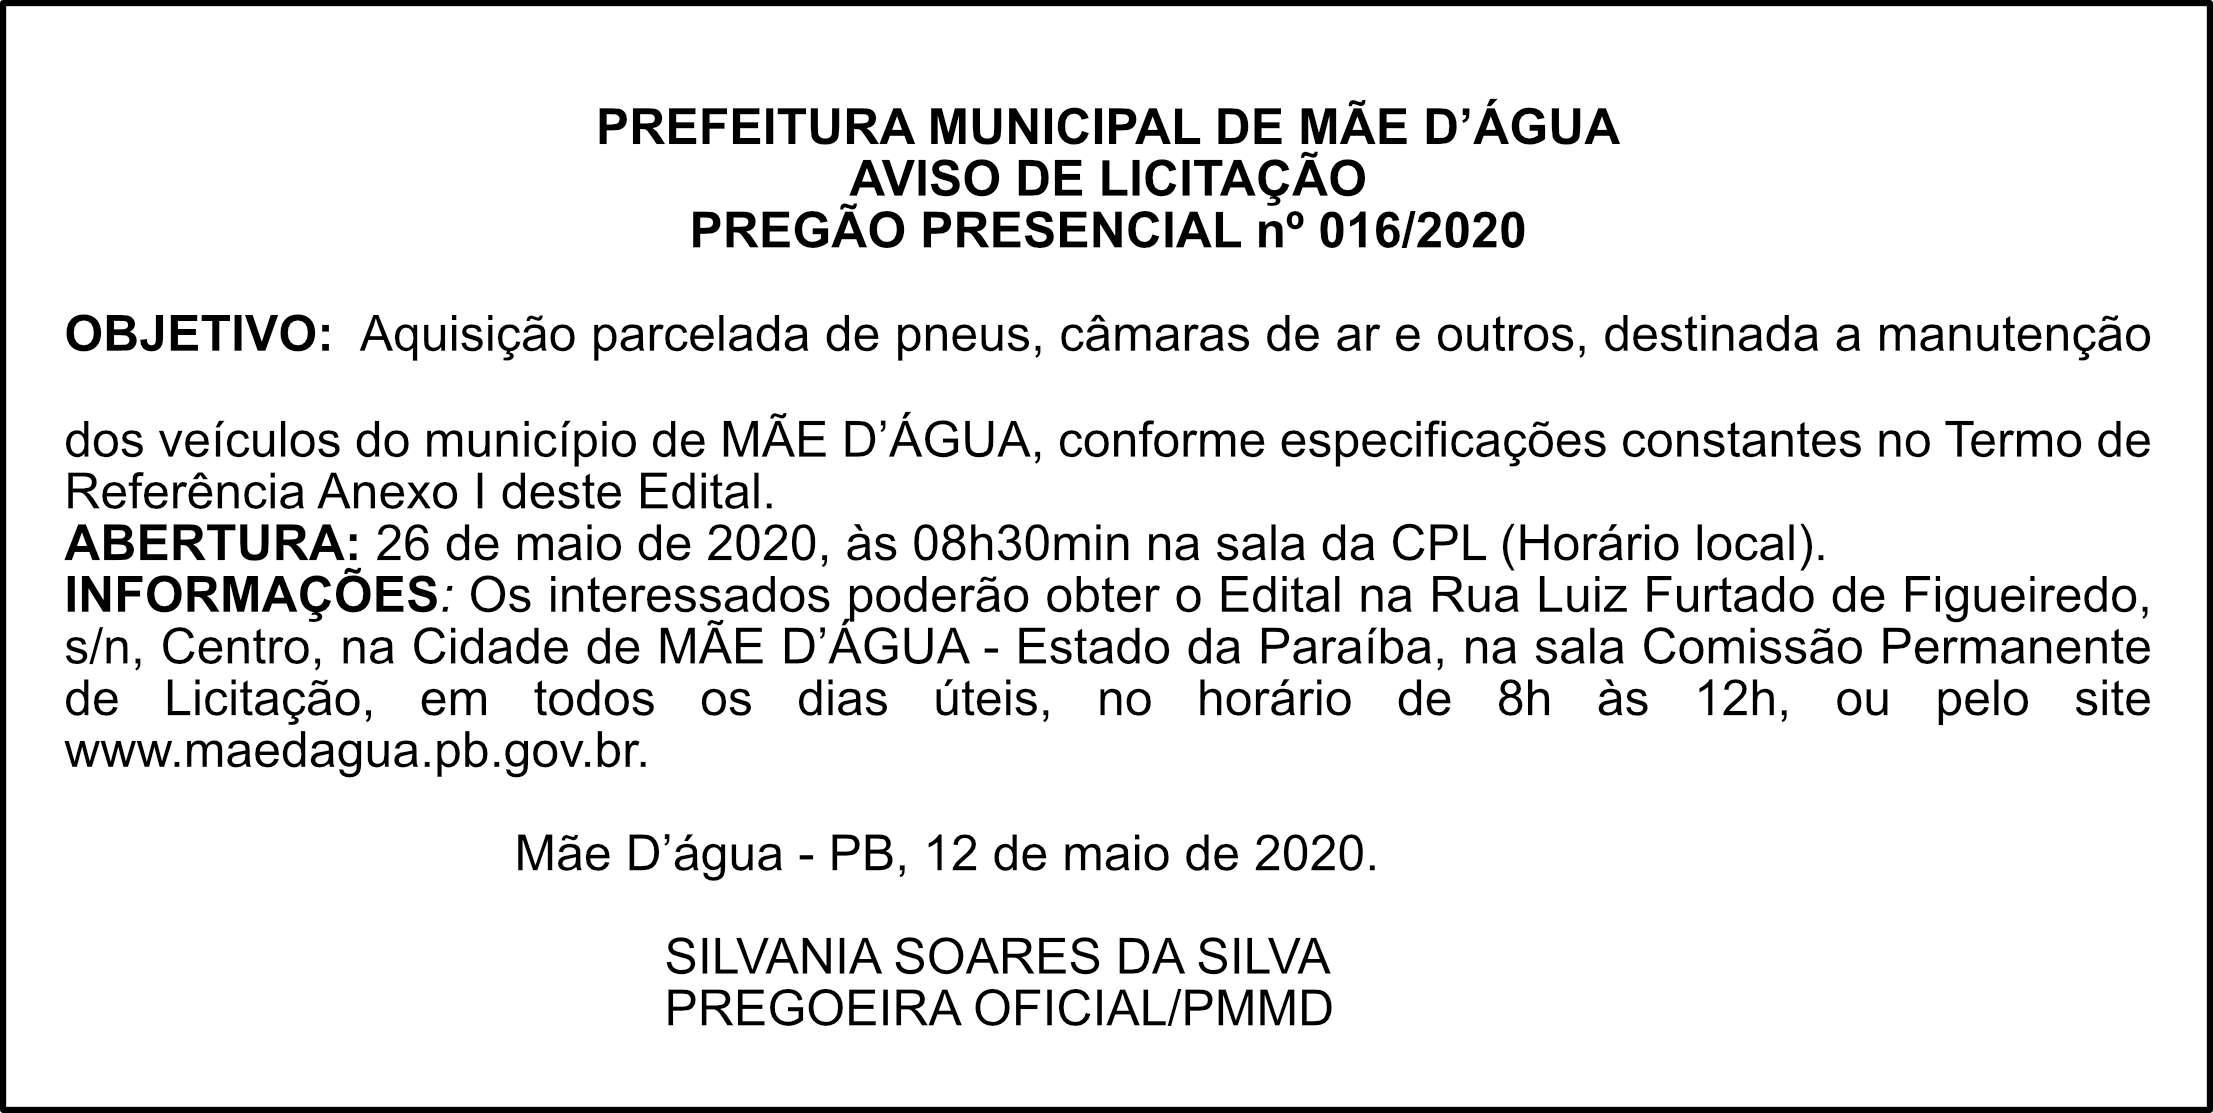 PREFEITURA MUNICIPAL DE MÃE D’ÁGUA – AVISO DE LICITAÇÃO – PREGÃO PRESENCIAL Nº 016/2020